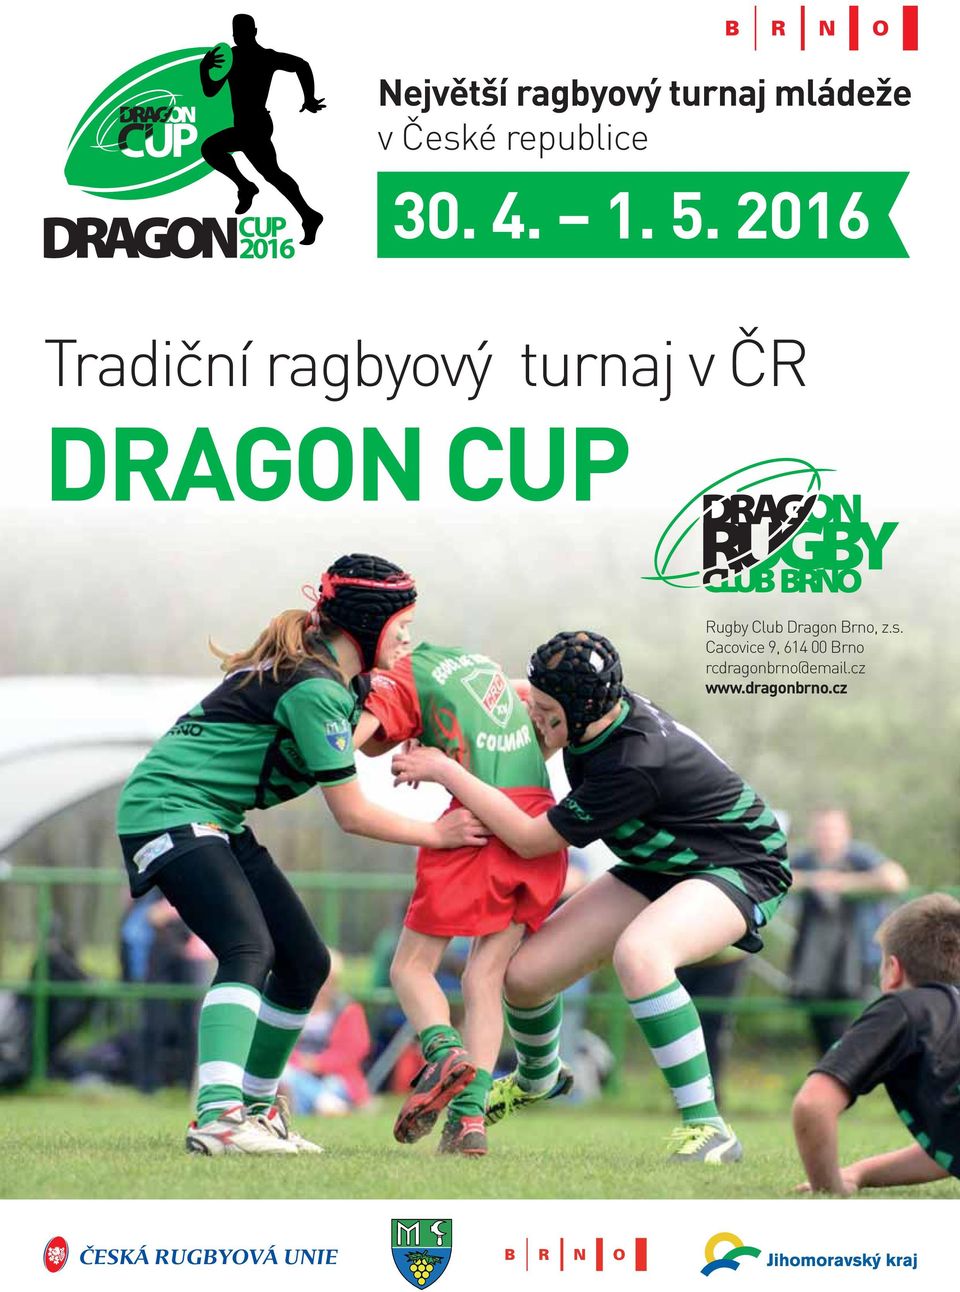 Rugby Club Dragon Brno, z.s.